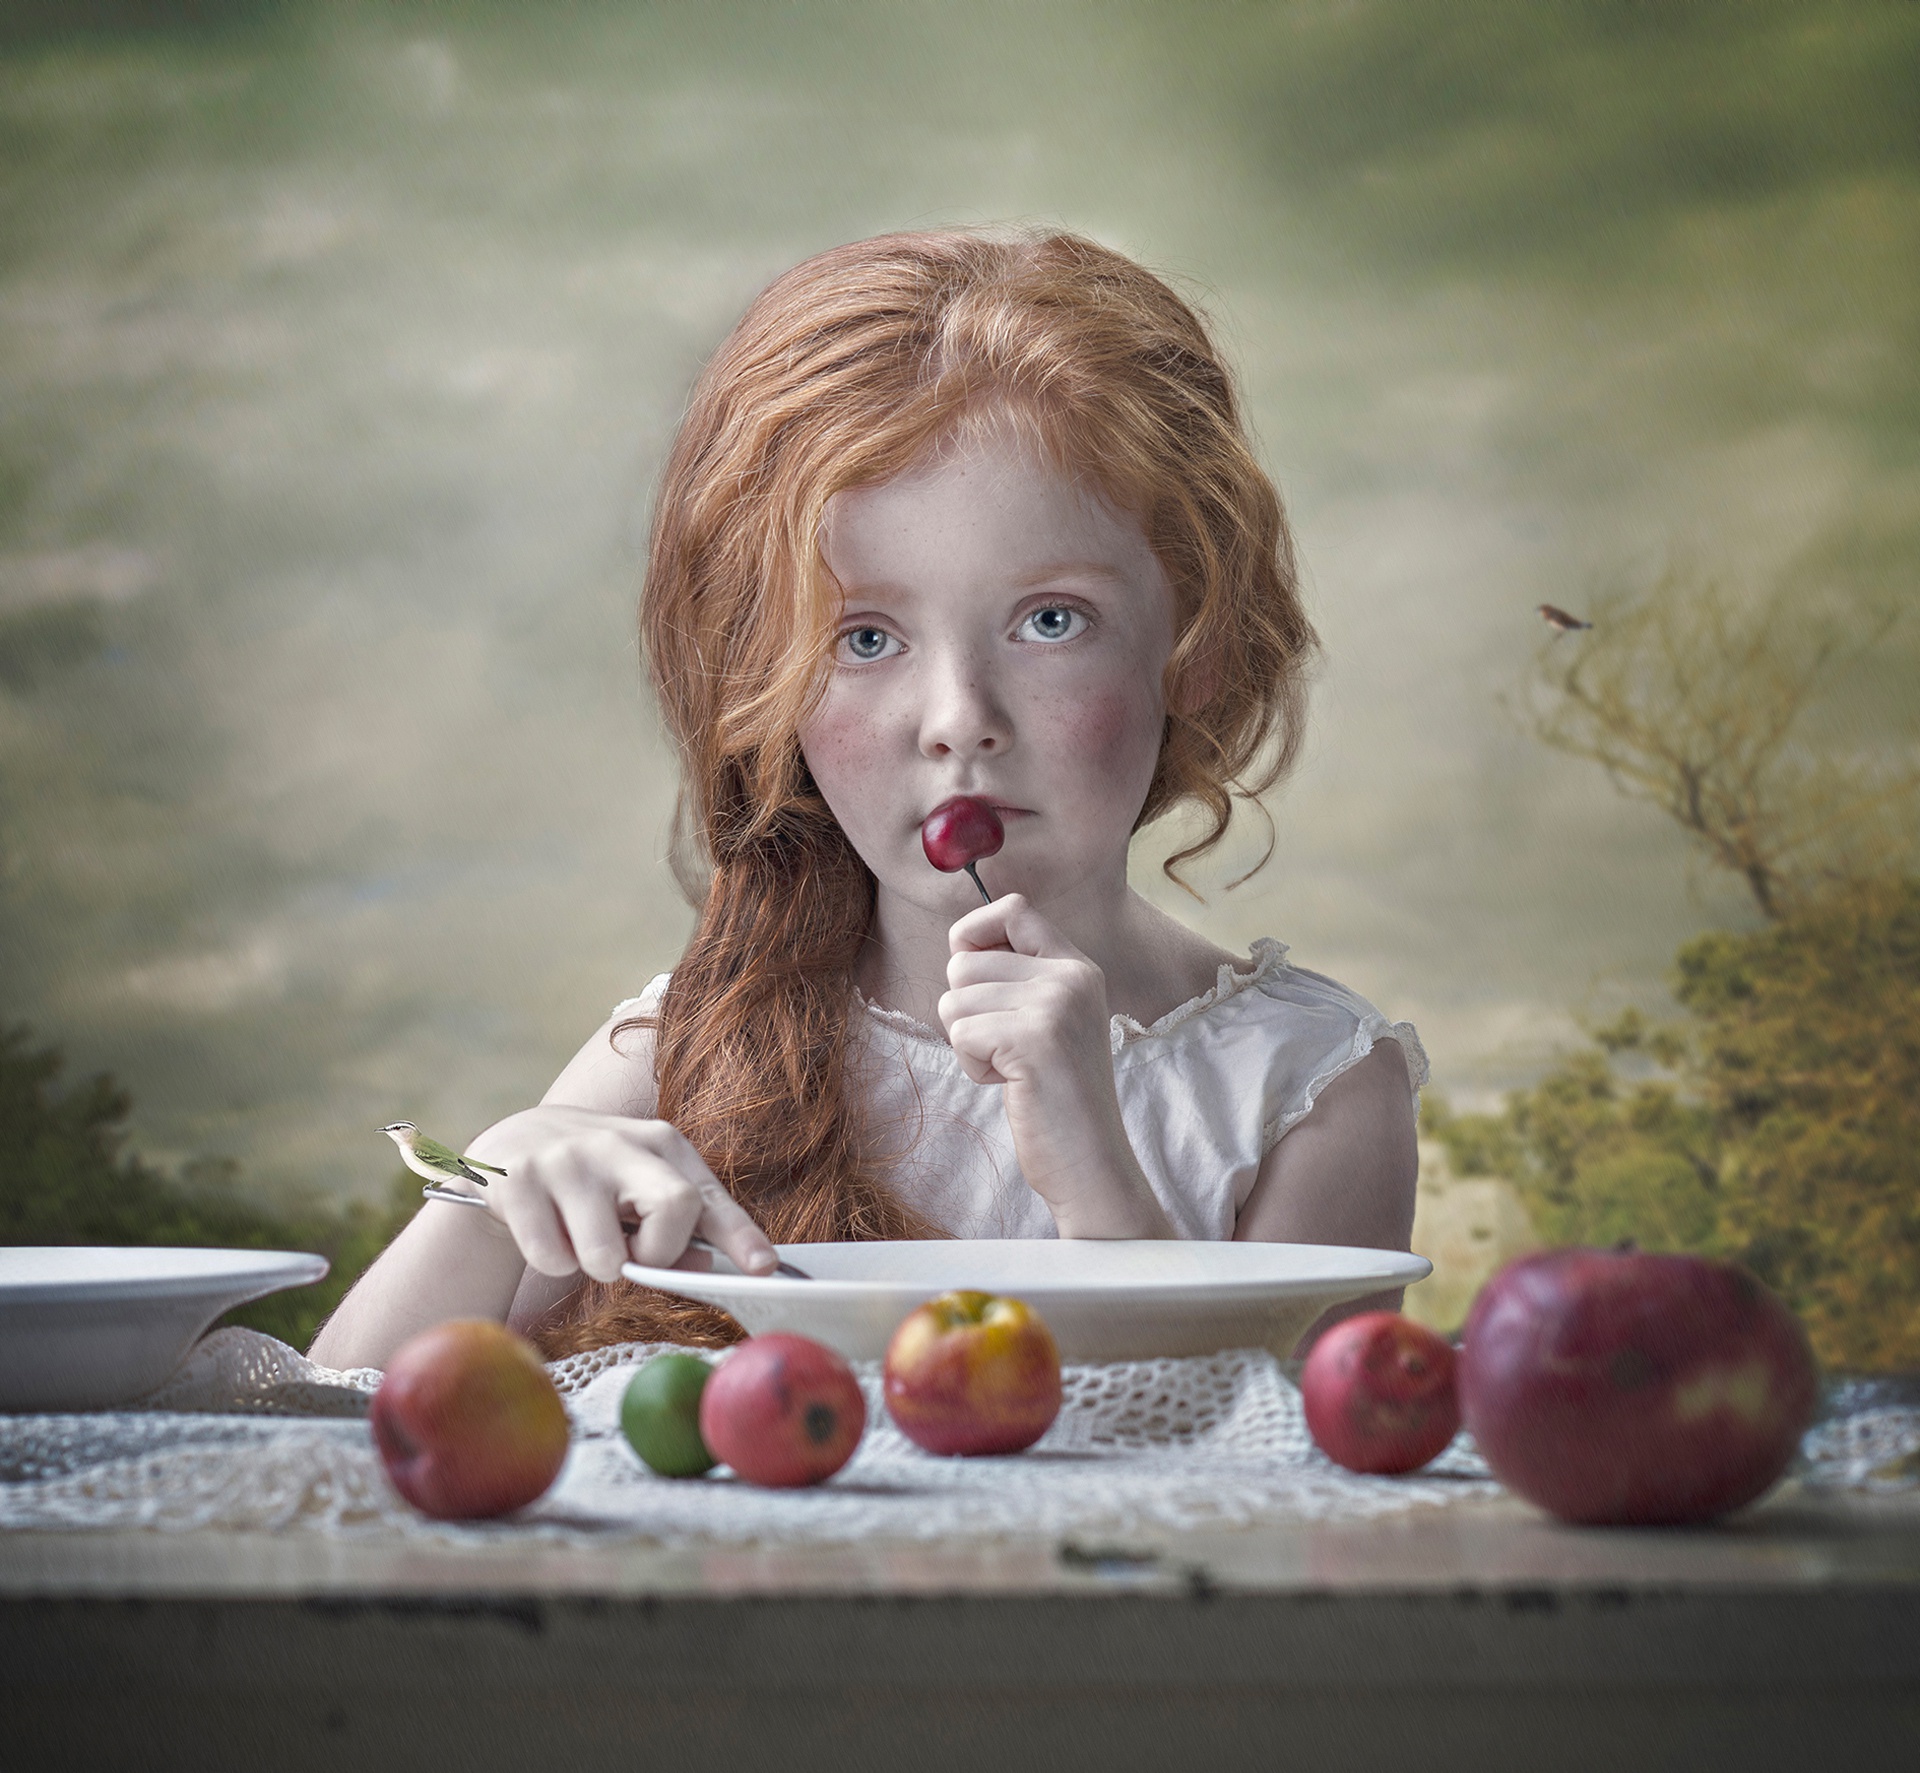 Фруктовая девочка. Девочка с яблоками. Девочка с фруктами. Девочка вишня. Маленькая девочка с яблоками.